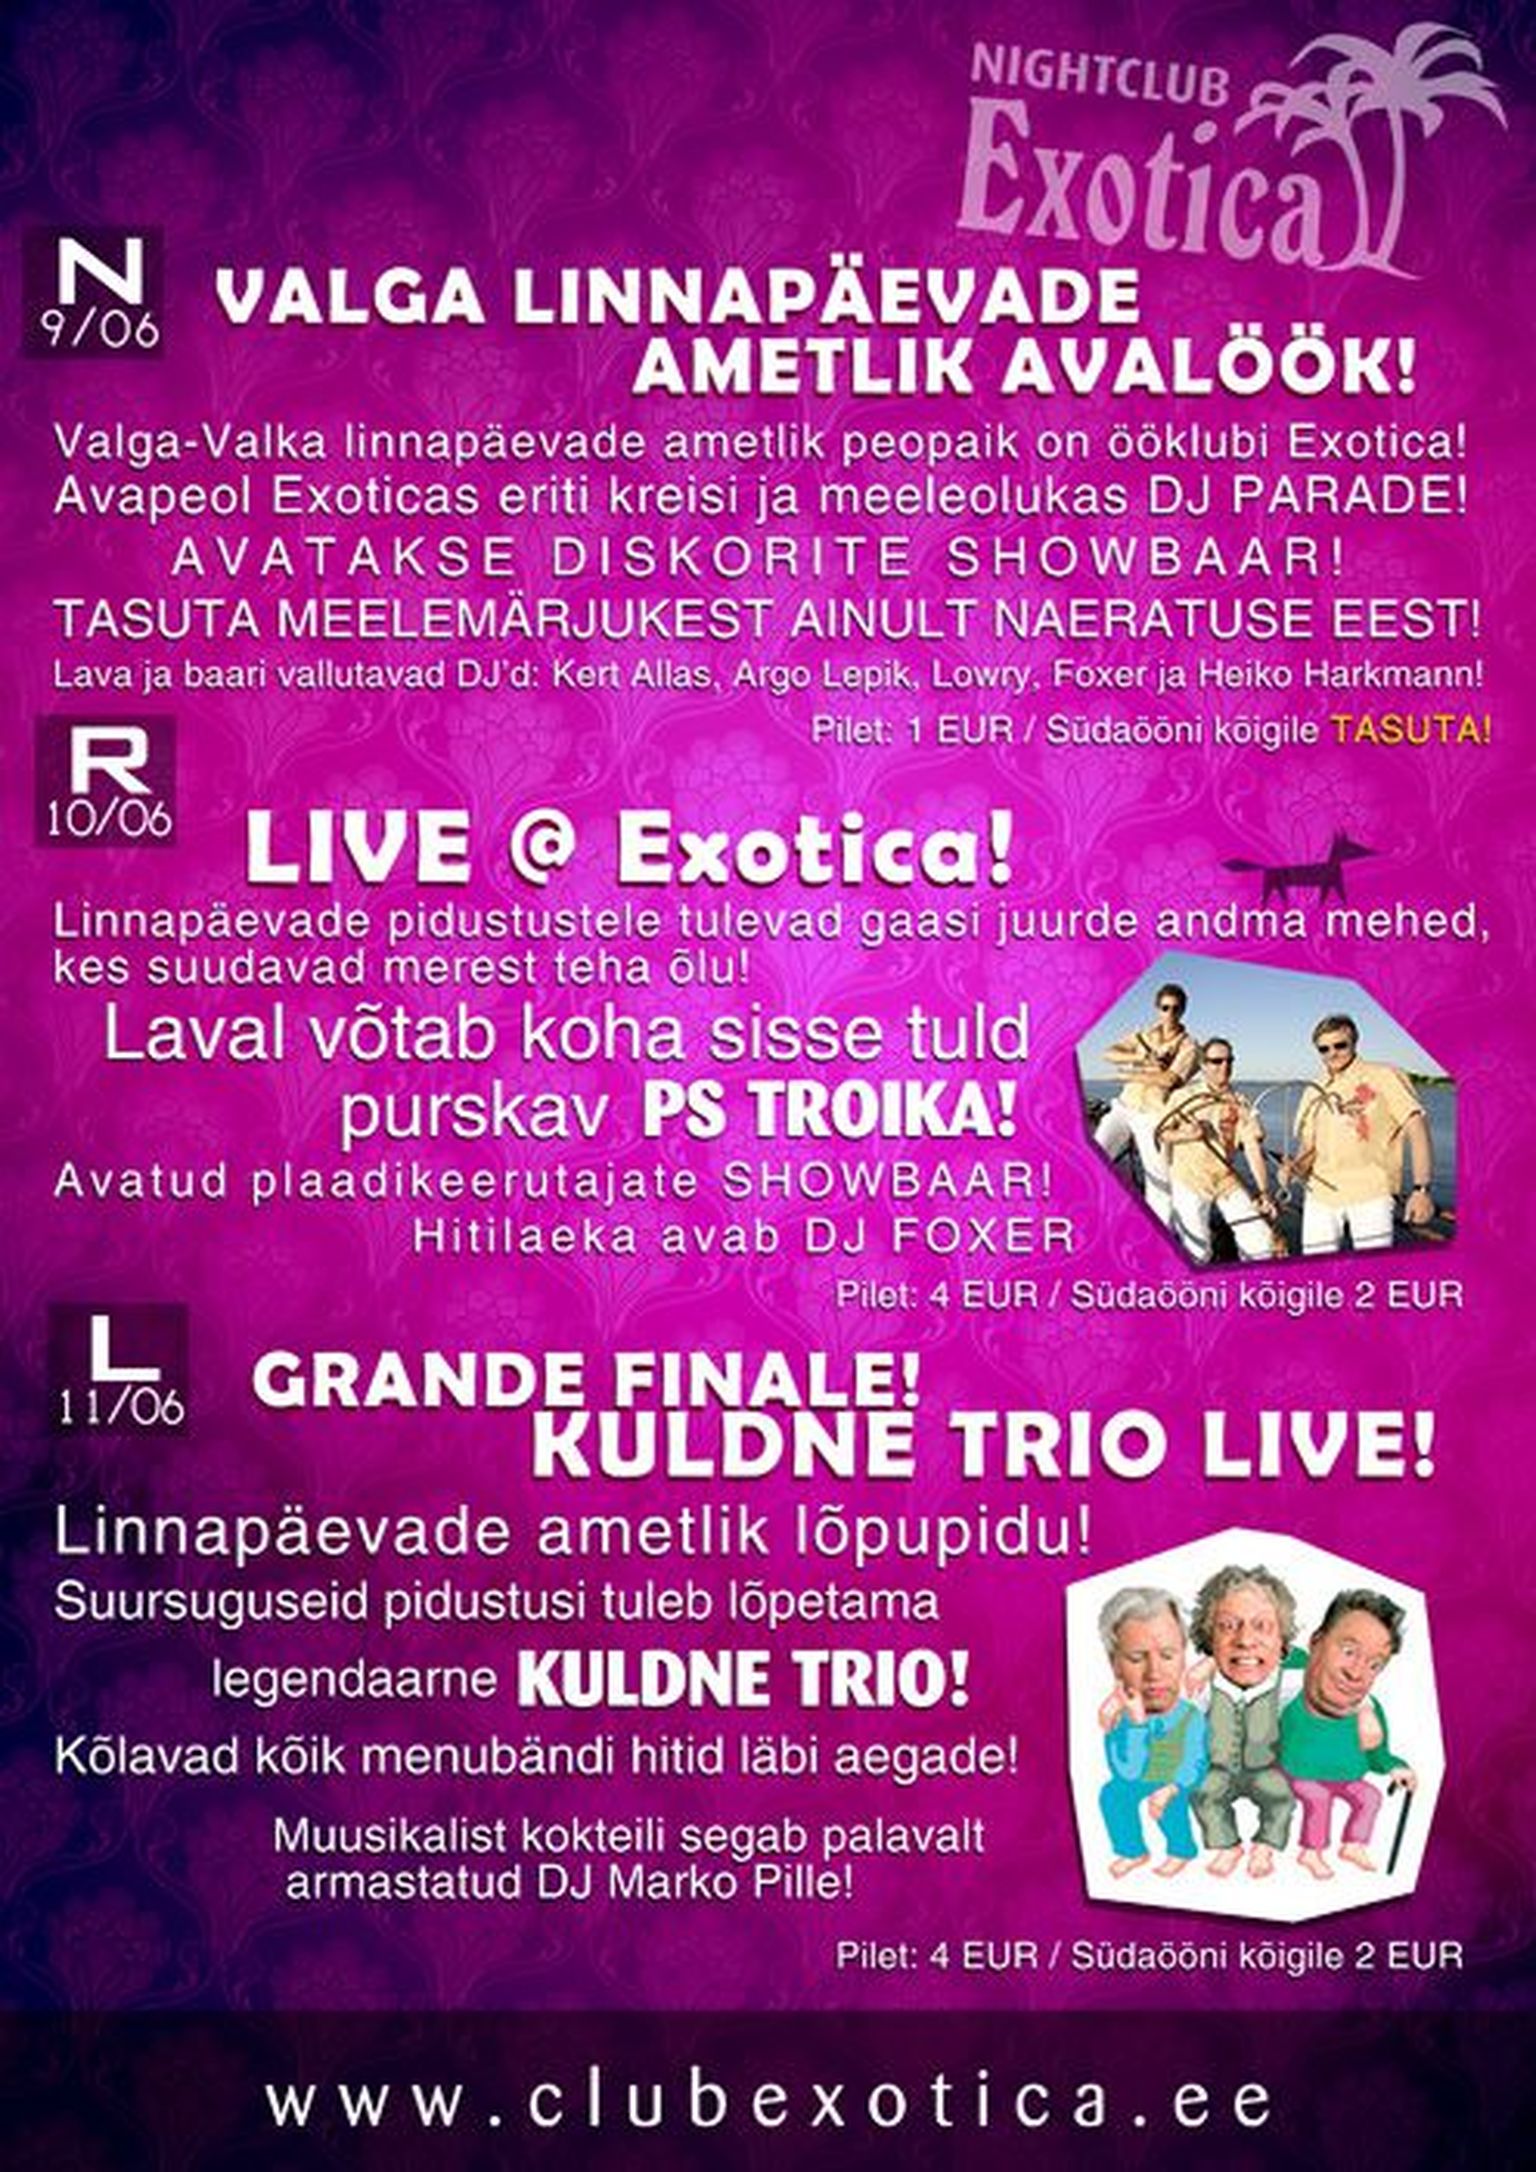 Valga-Valka linnapäevade ametlik ööklubi on Exotica!